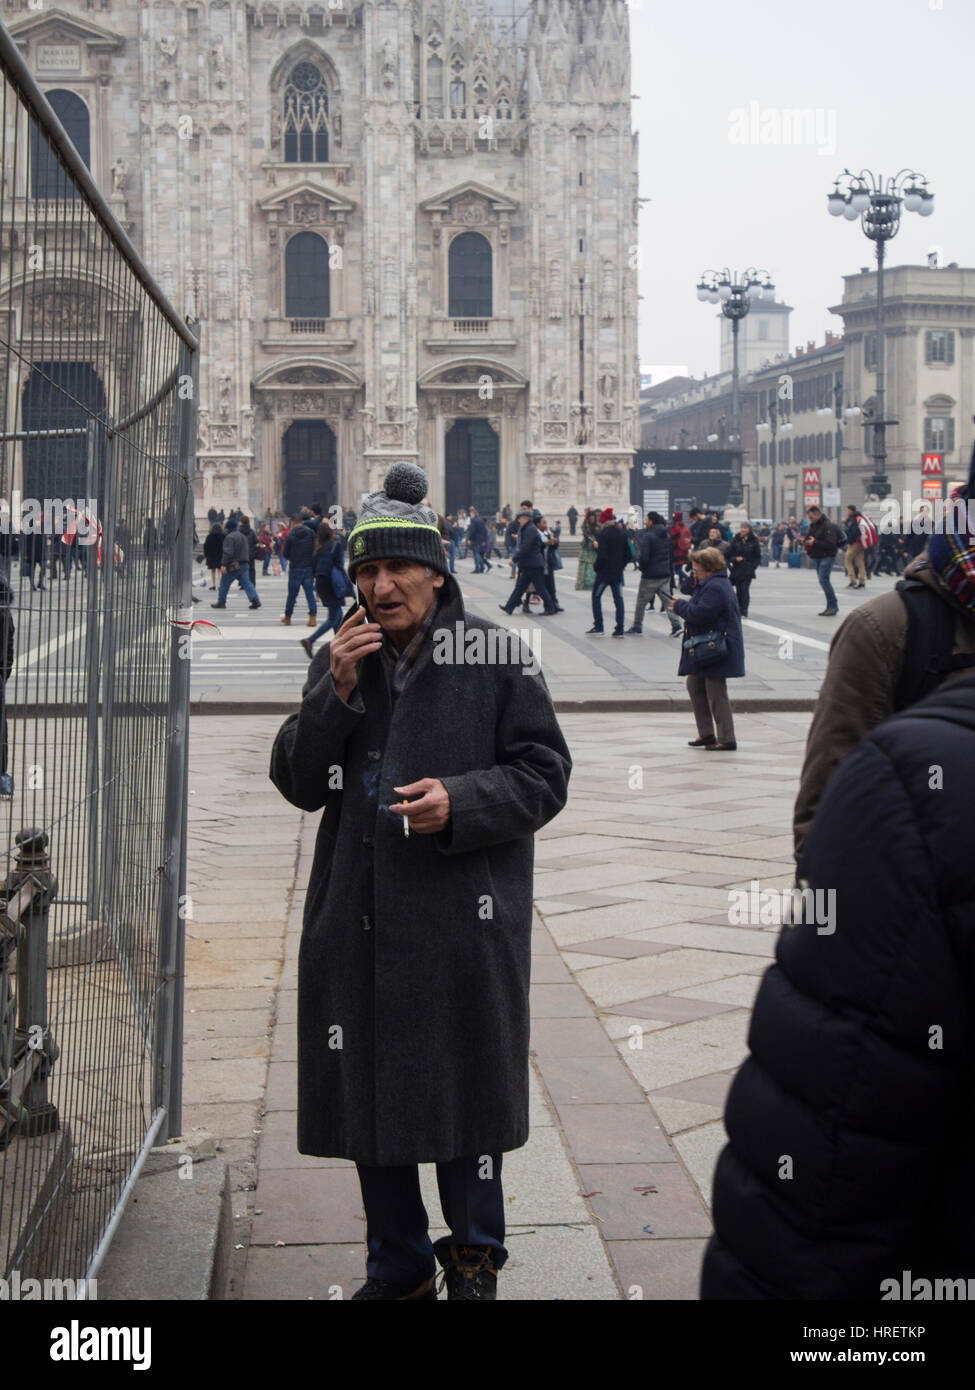 Starbucks palmeras en Milán, y los taxistas que protestaban contra uber inPiazza Duomo, durante la Semana de la moda de Milán - 24 de febrero de 2017 Foto de stock